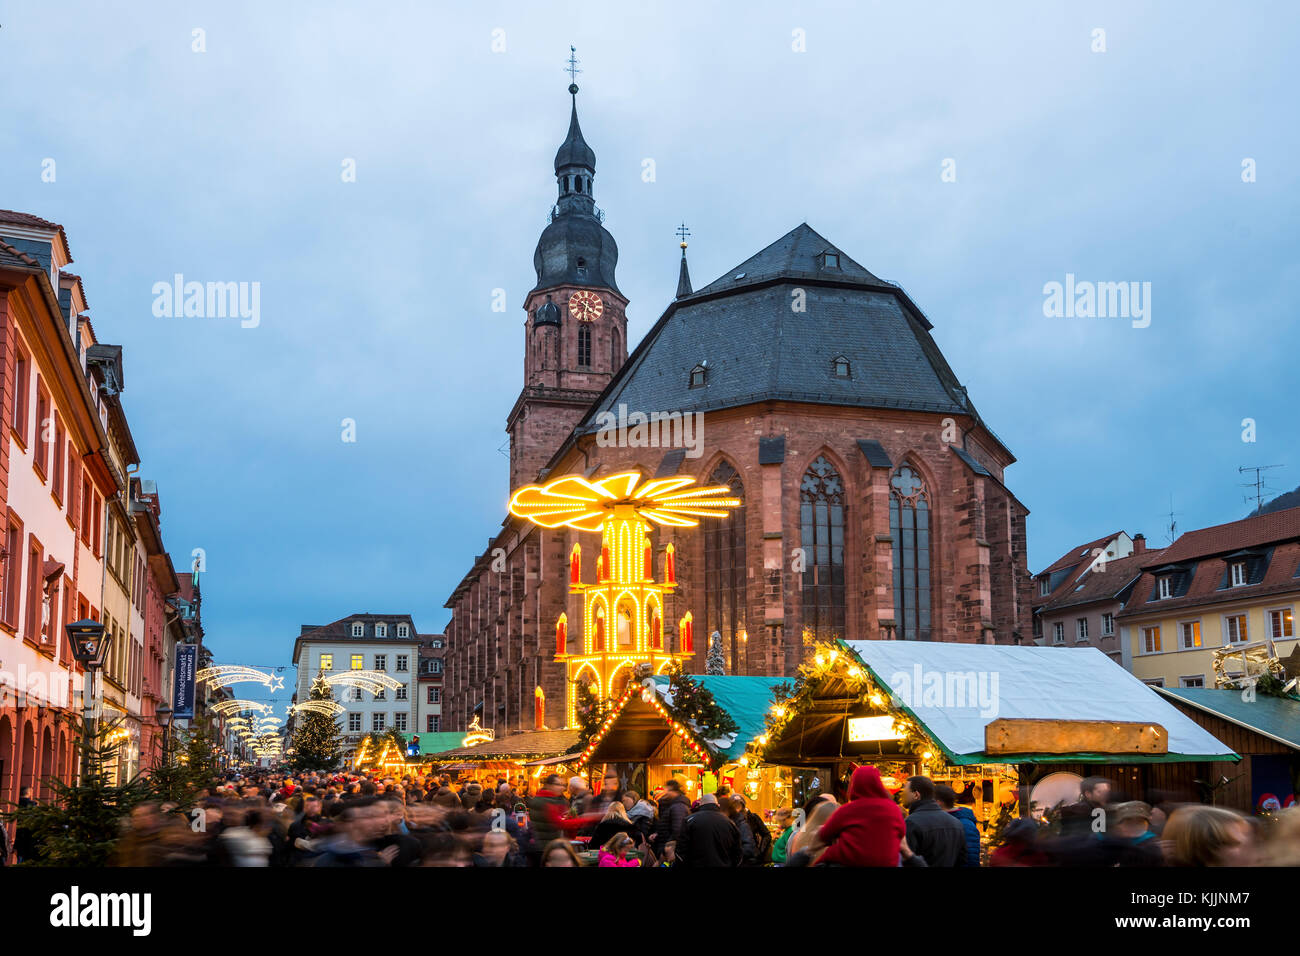 Germania, Heidelberg, mercato di Natale presso la chiesa dello Spirito Santo Foto Stock